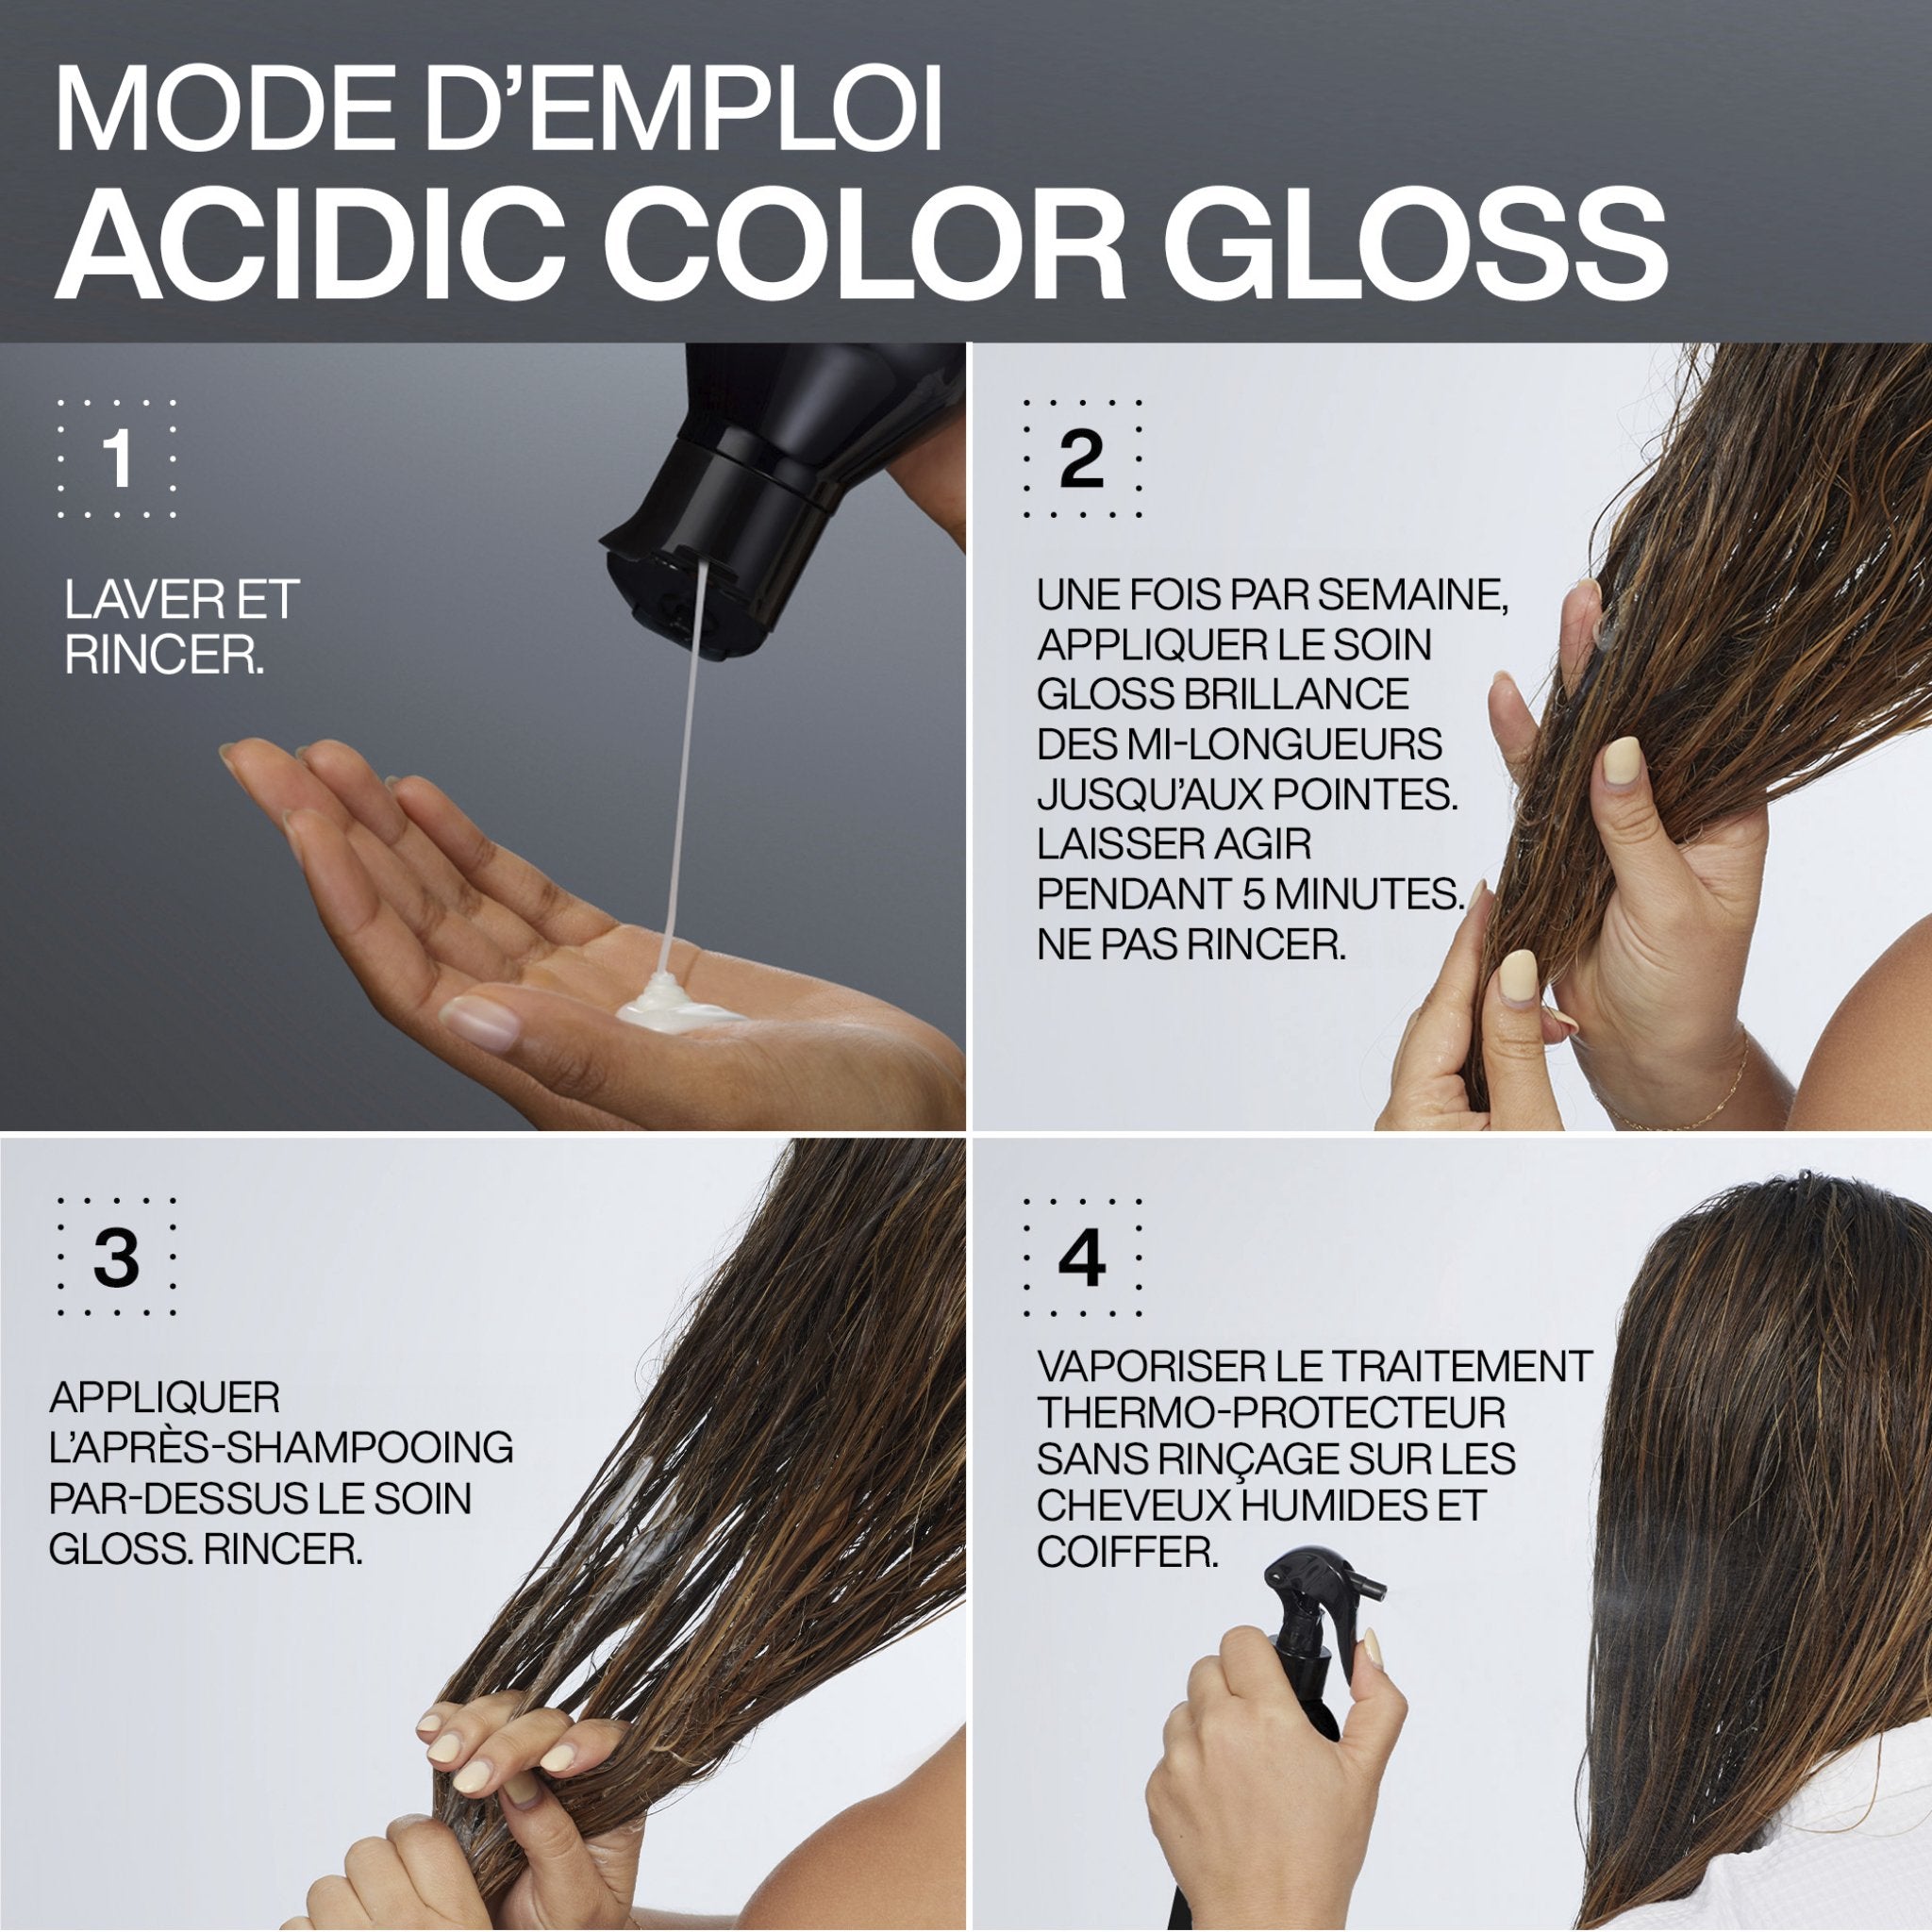 Redken. Revitalisant Acidic Color Gloss - 300 ml - Concept C. Shop